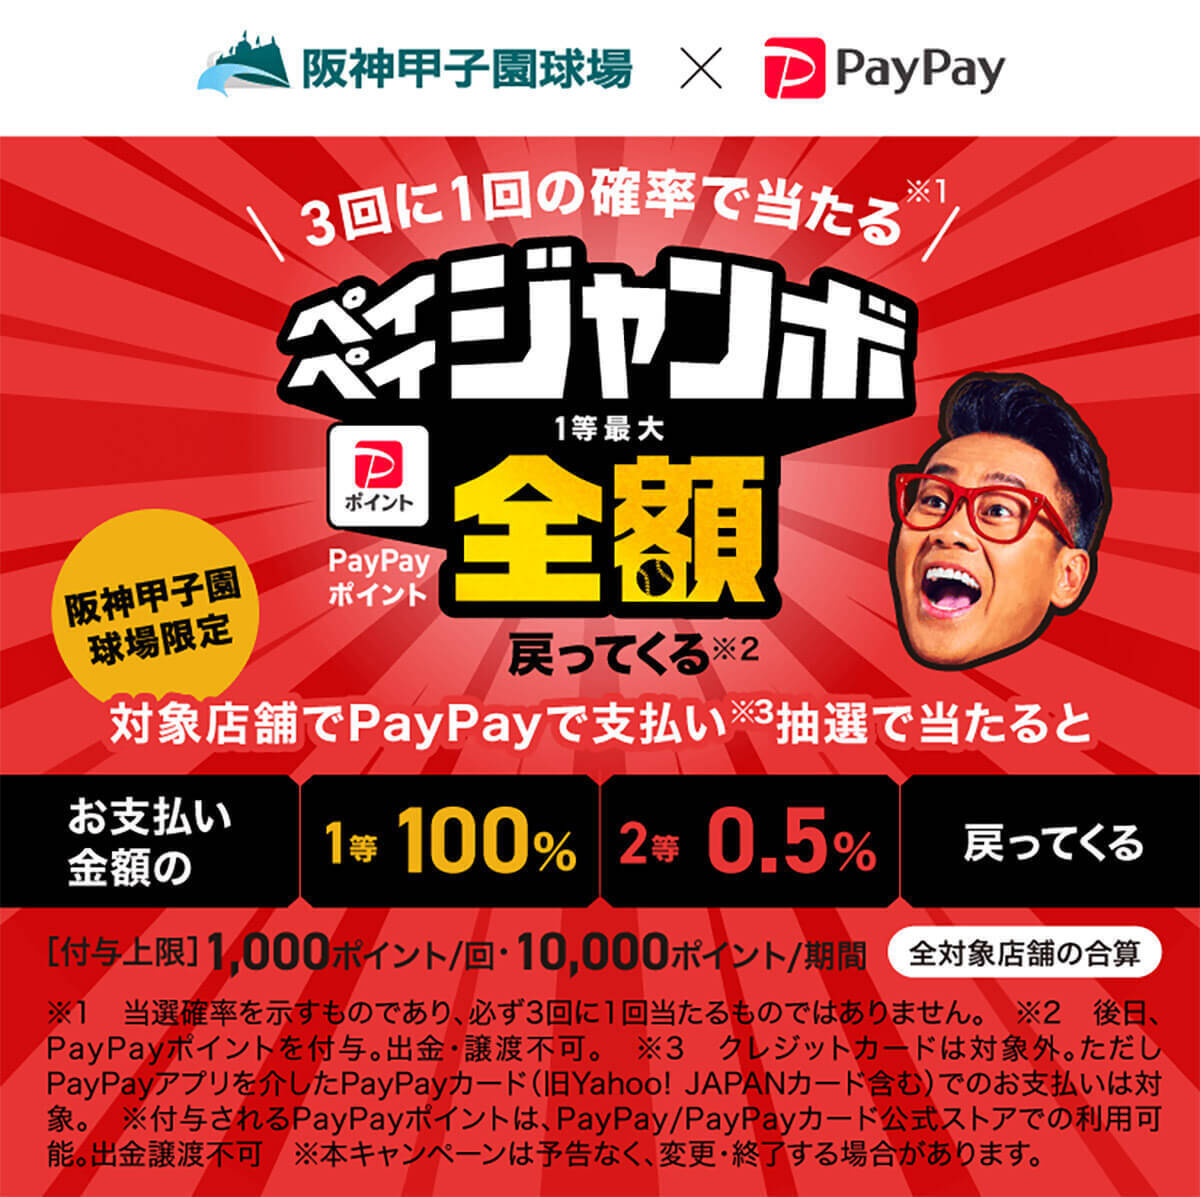 d払い・PayPay・楽天ペイ・au PAYキャンペーンまとめ【5月22日最新版】